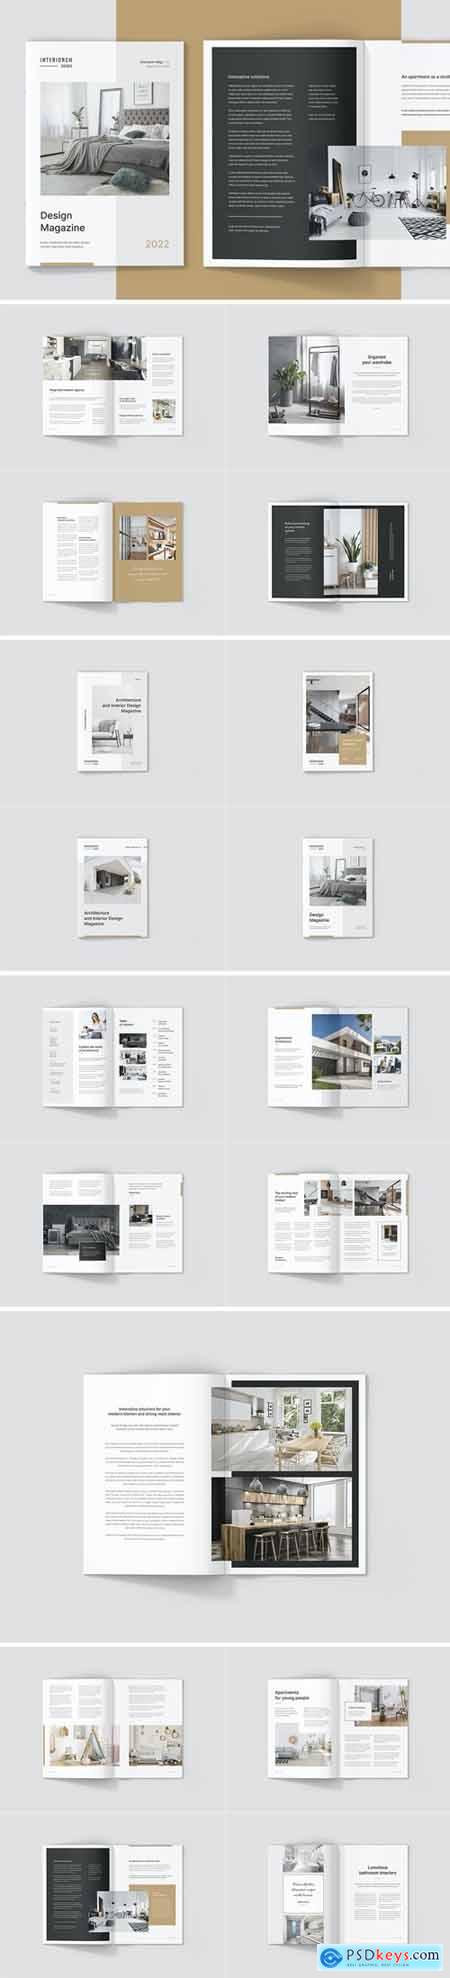 Interiorch  Architecture and Interior Magazine